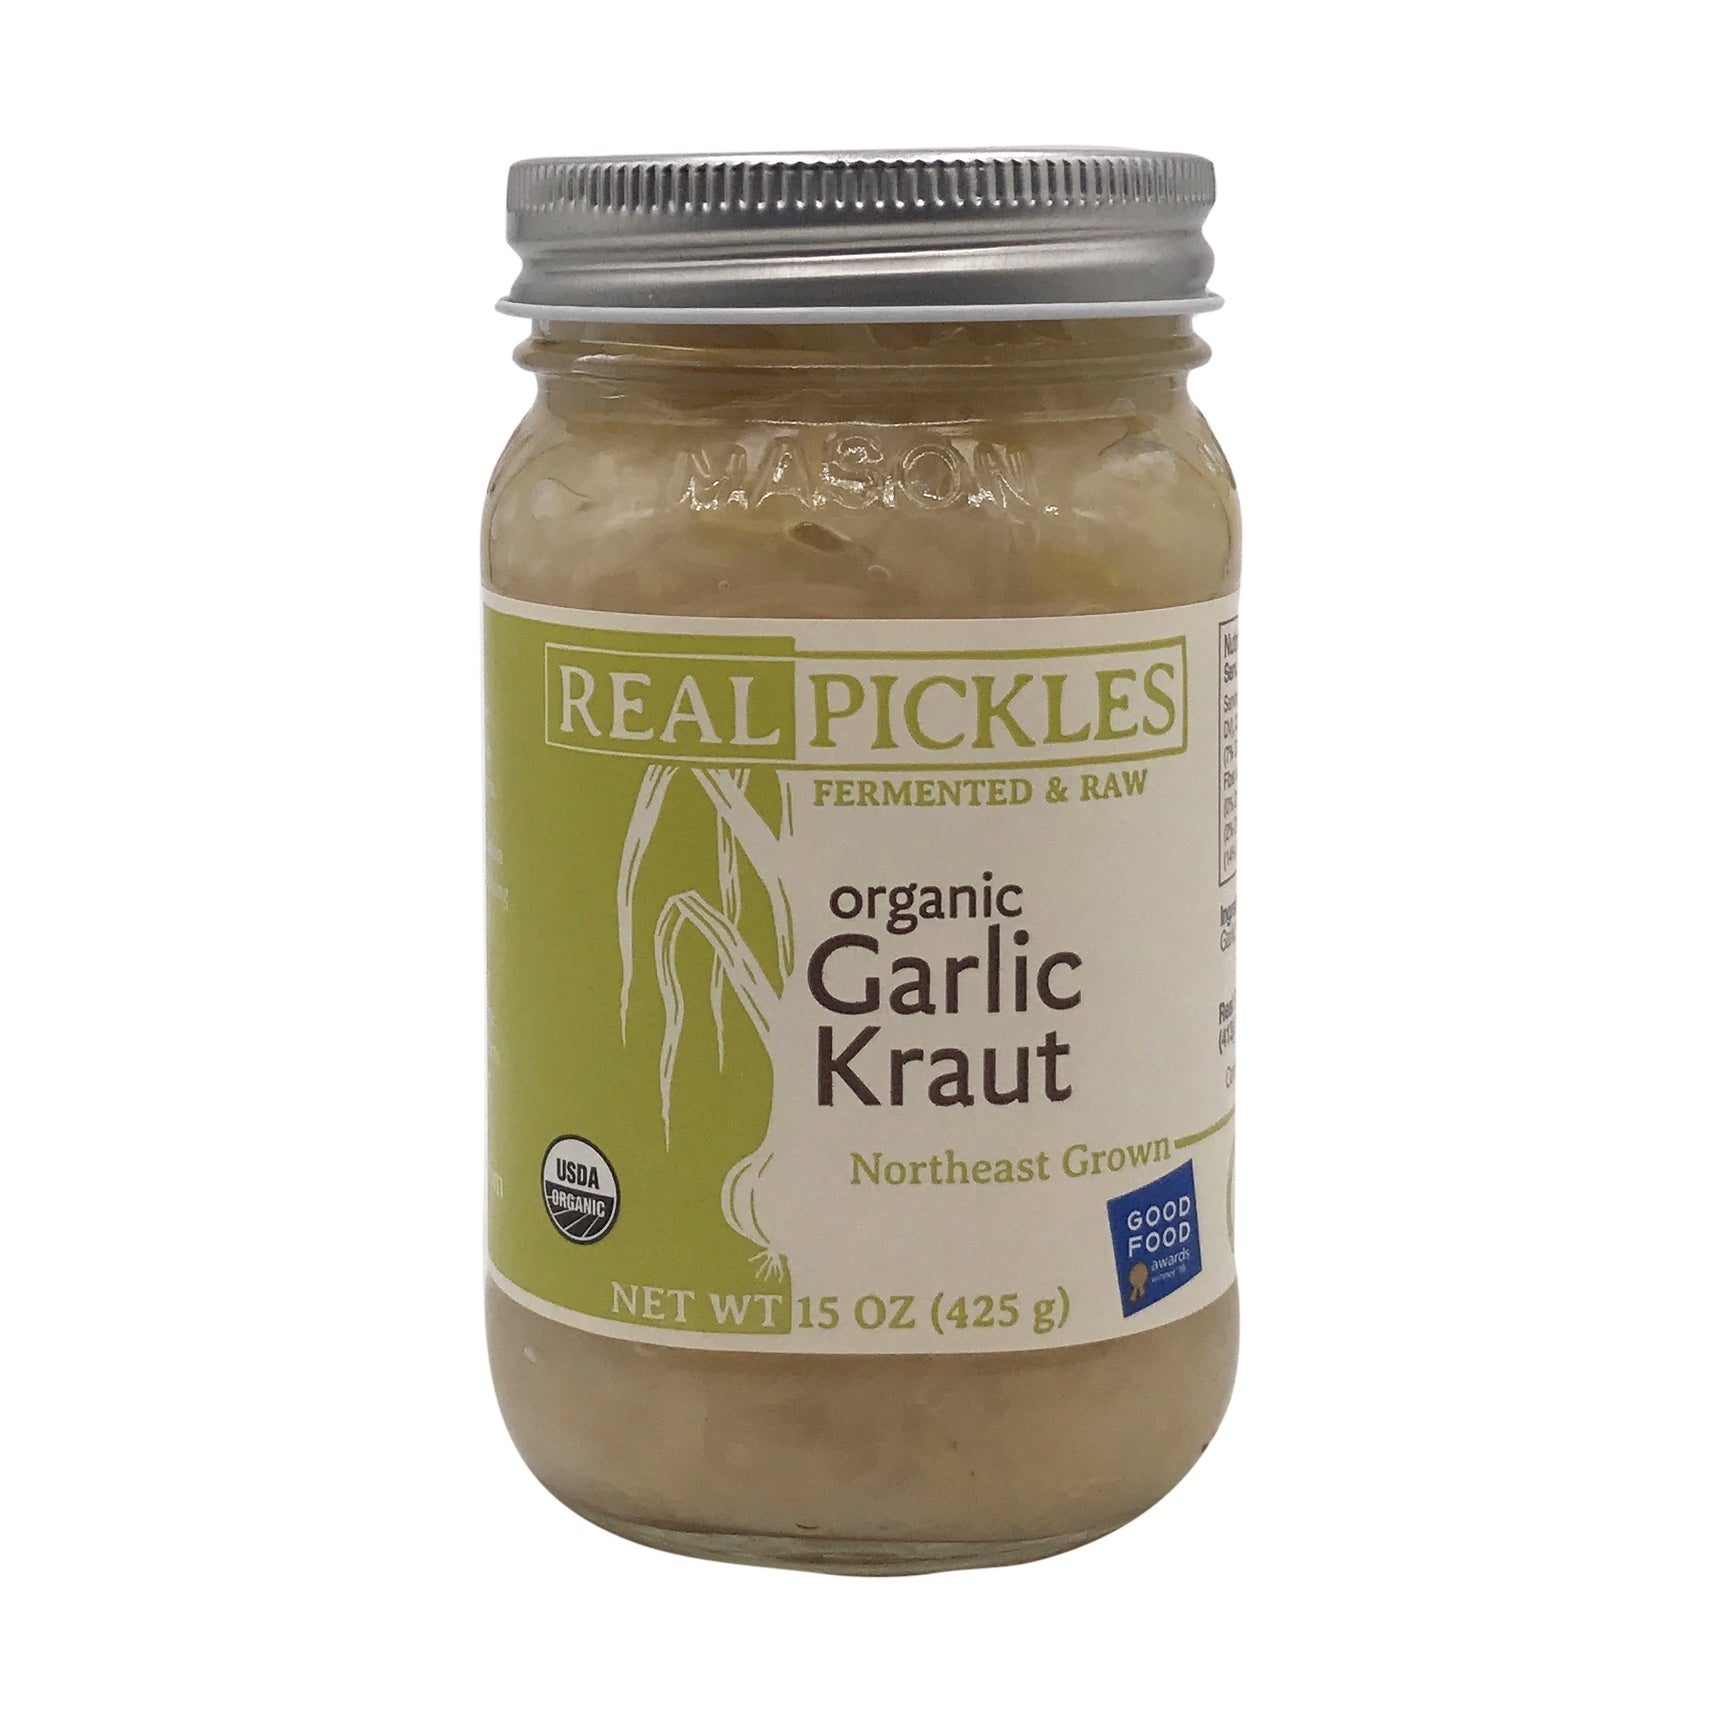 Real Pickles: Organic Garlic Kraut